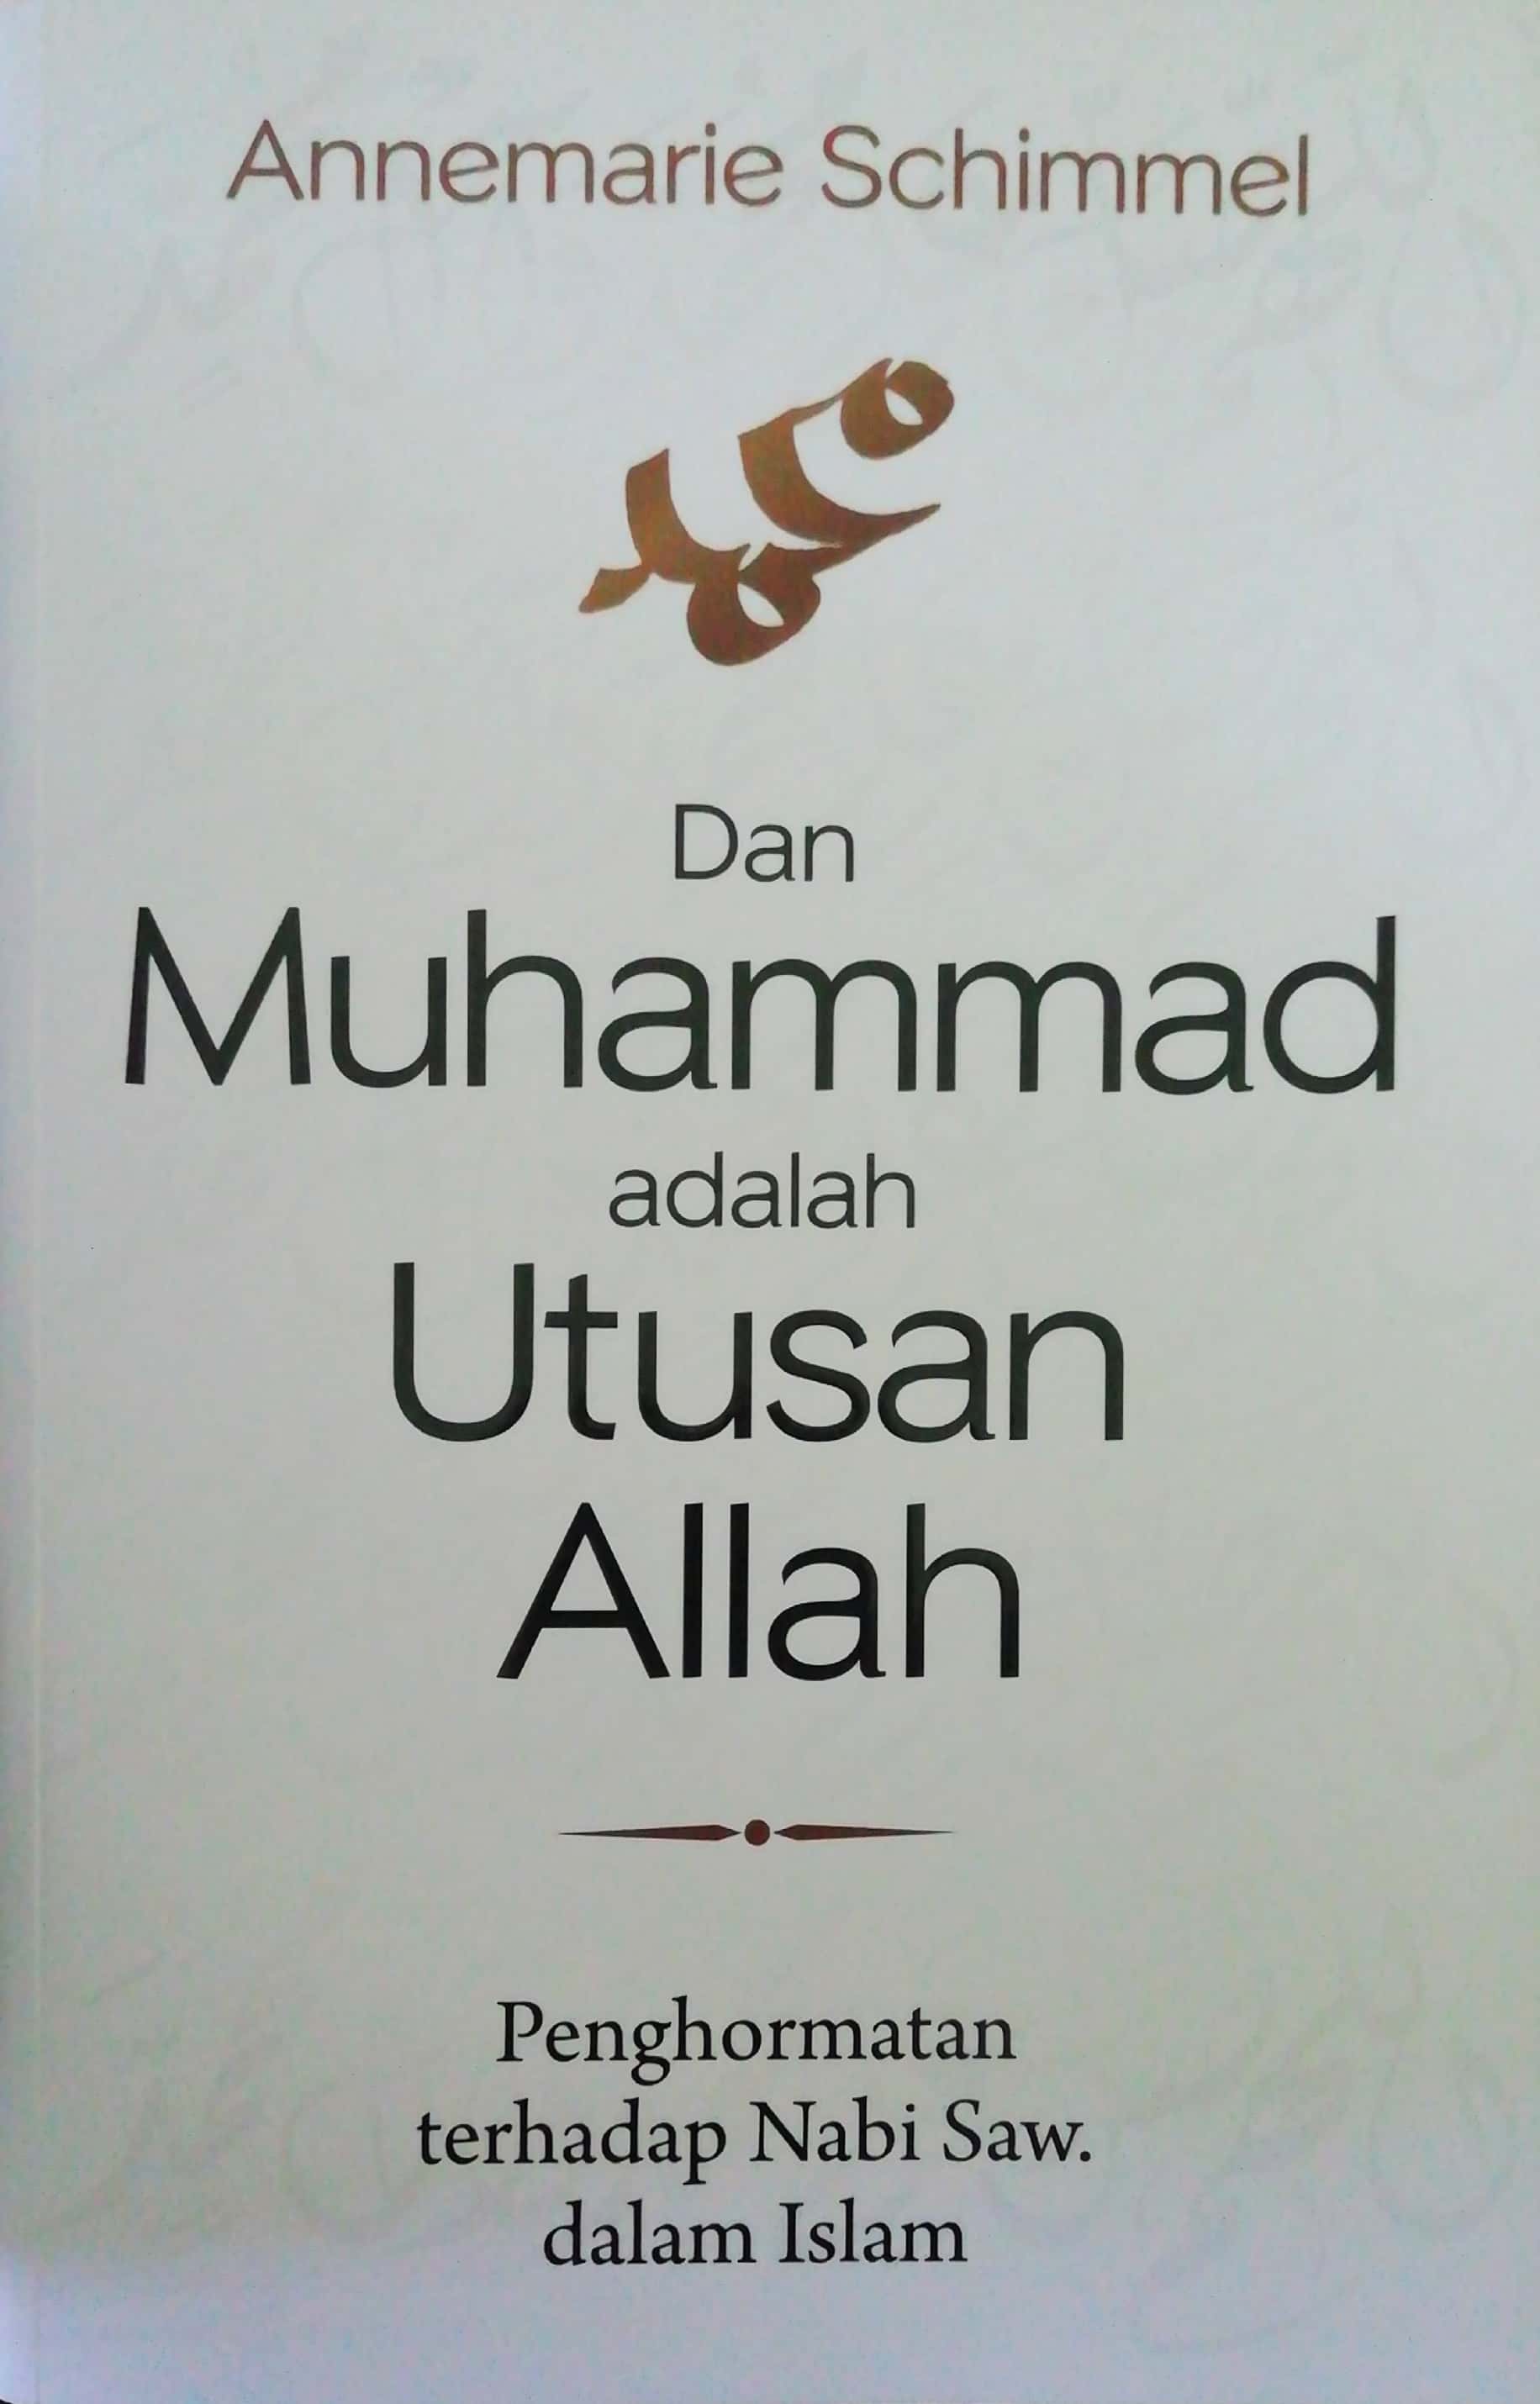 Dan Muhammad adalah Utusan Allah